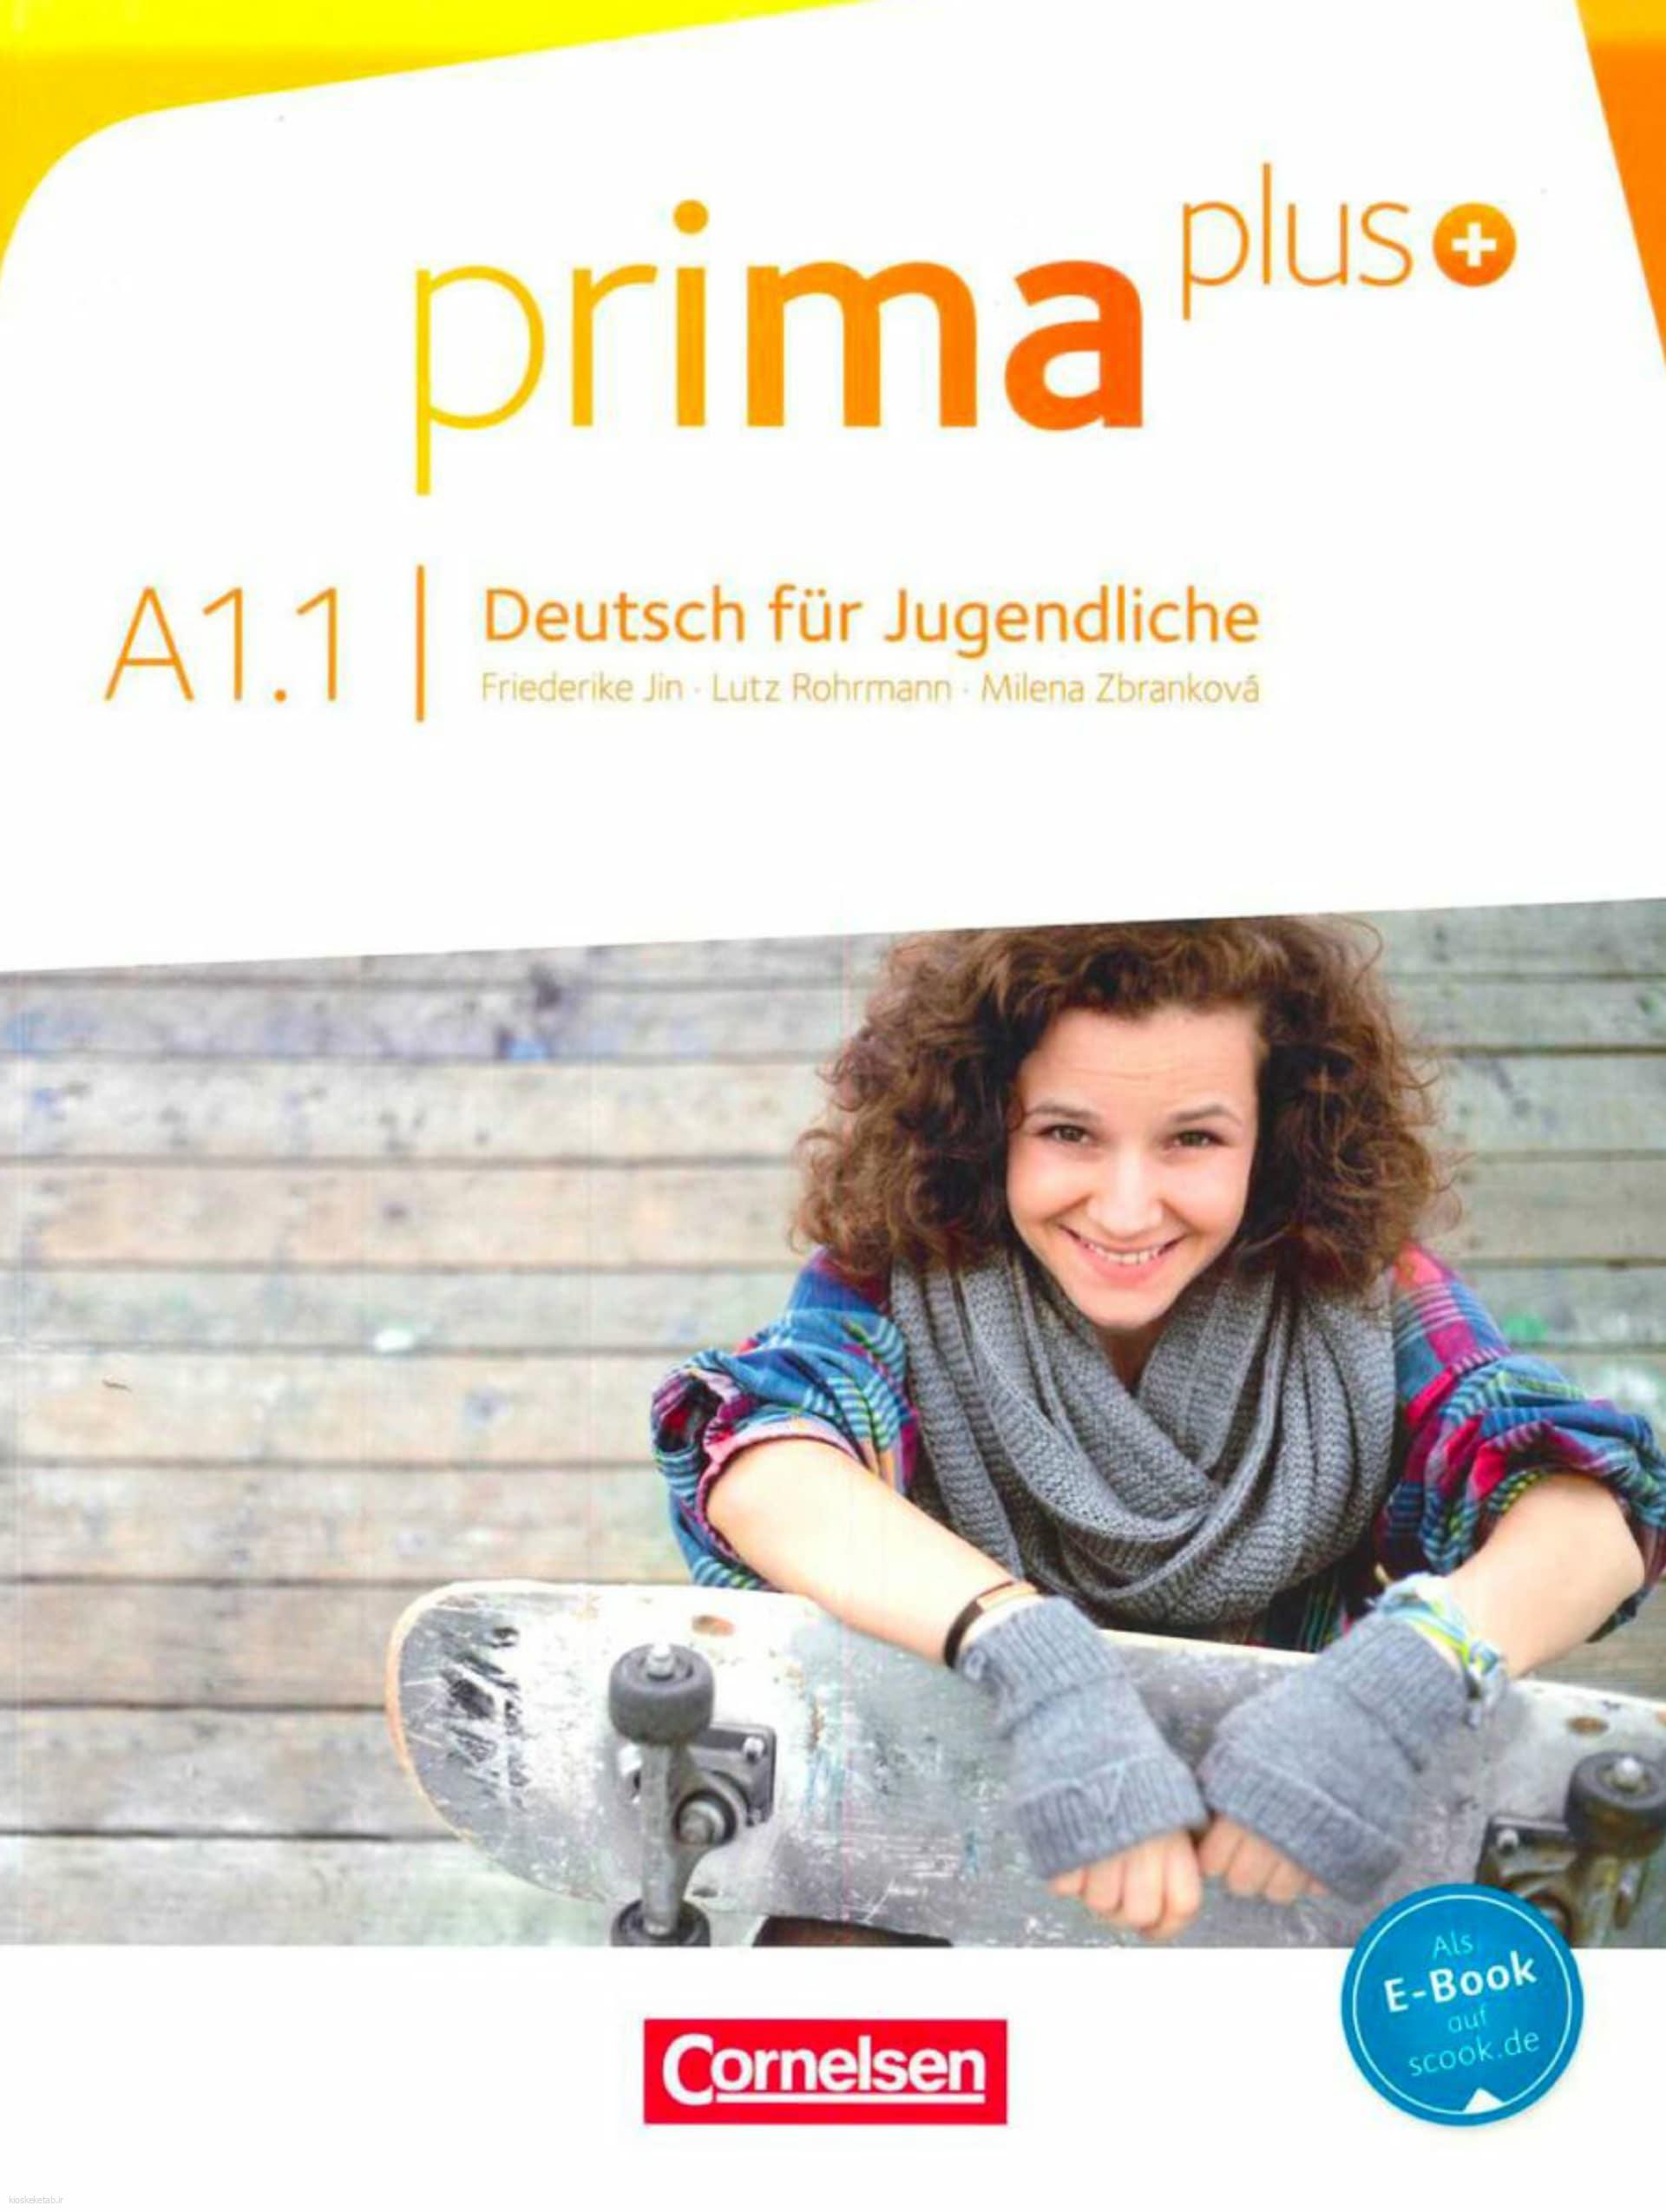 دانلود کتاب آلمانیprima plus a1.1